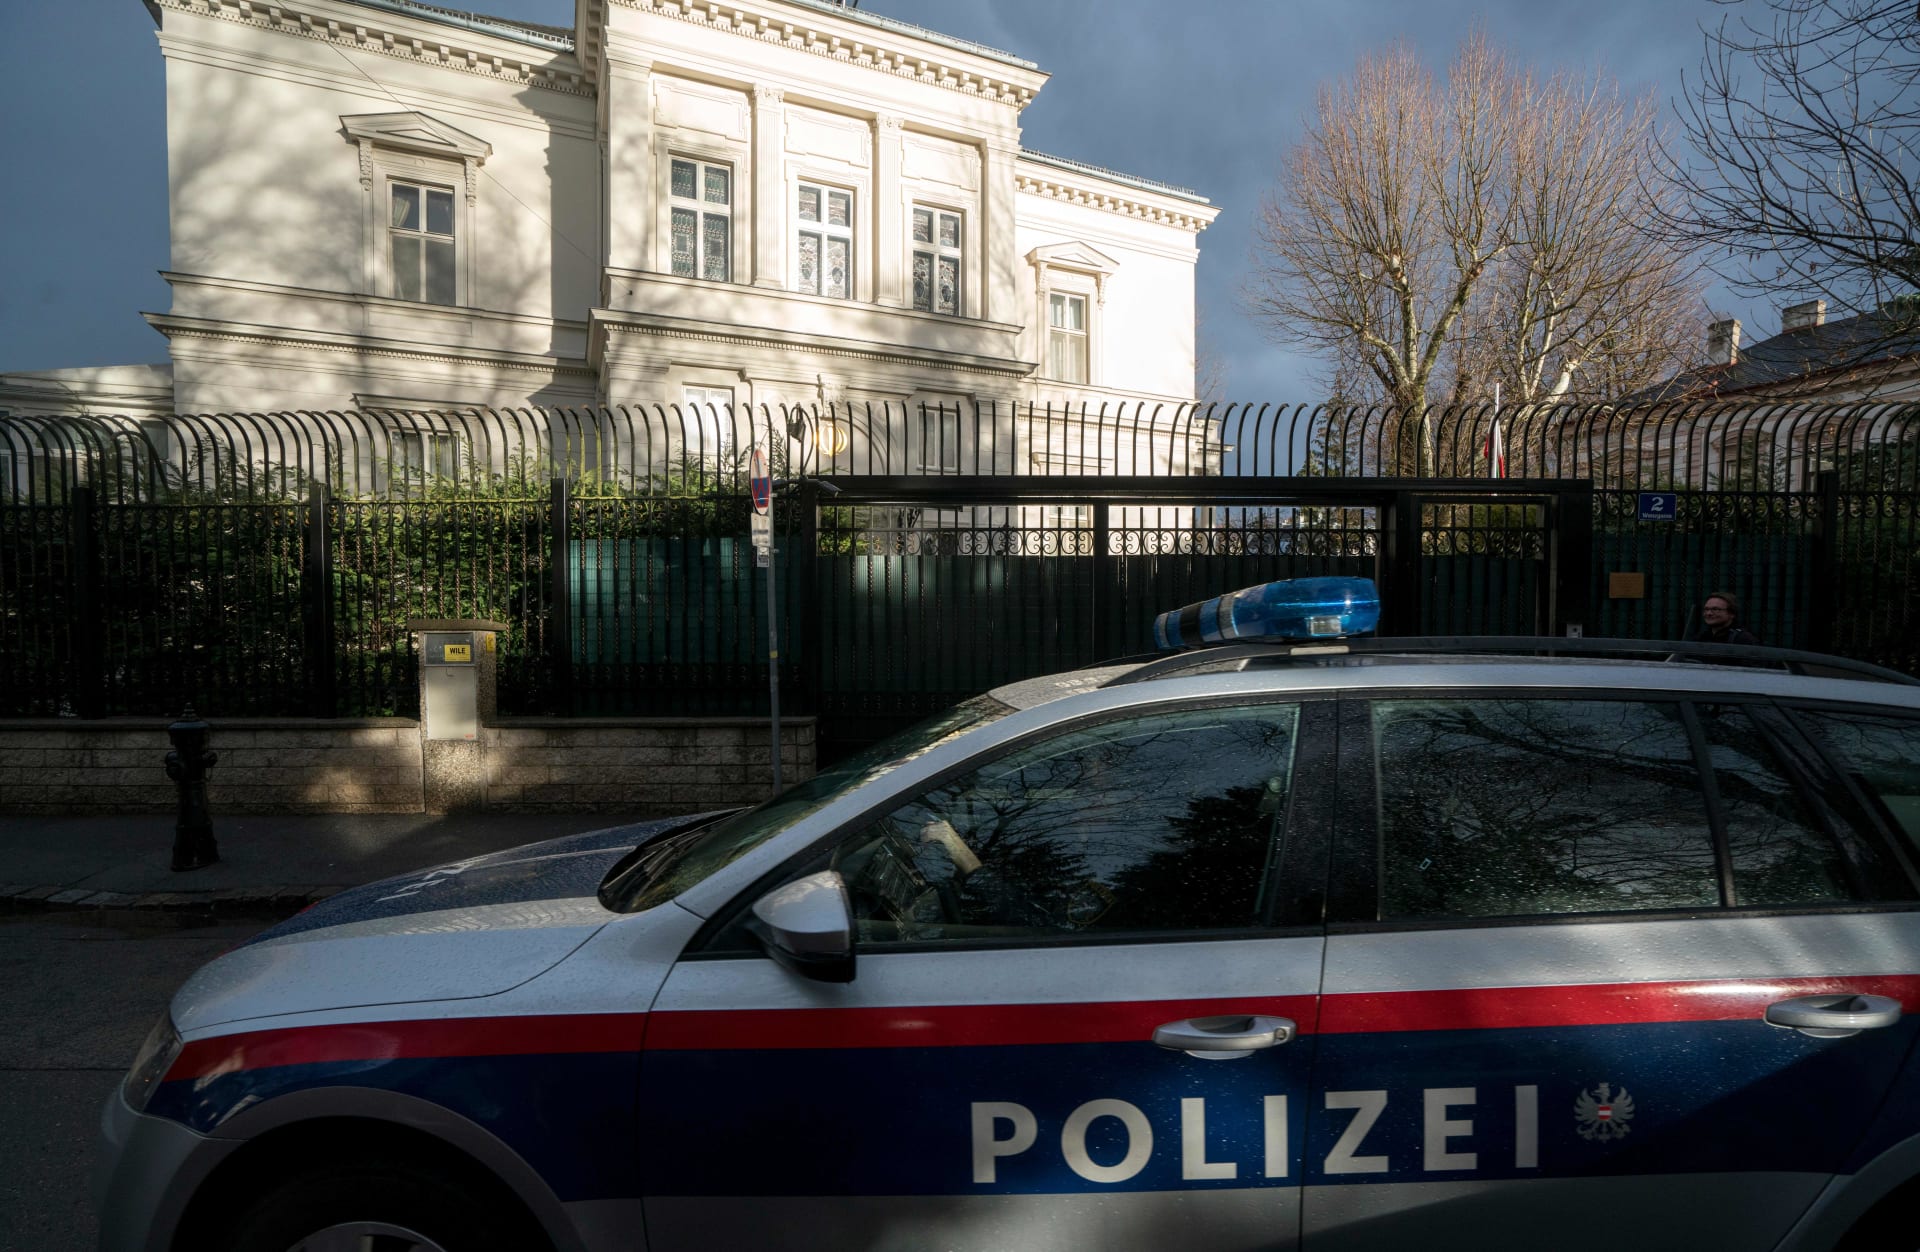  إطلاق النار على شخص يحمل سكينا خارج منزل السفير الإيراني في فيينا